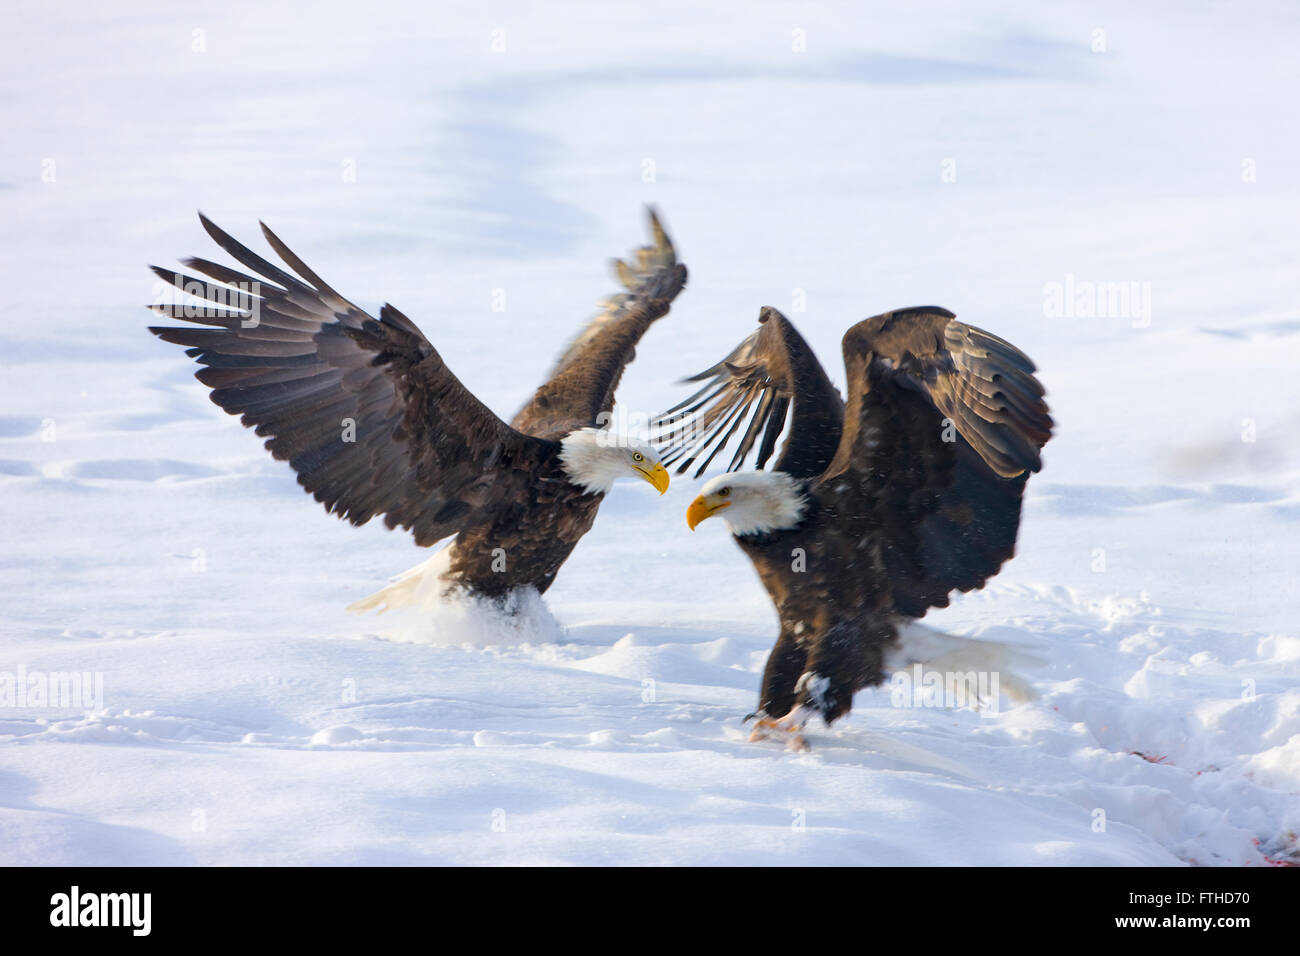 Bald Eagles fighting on snow, Alaska, USA Stock Photo